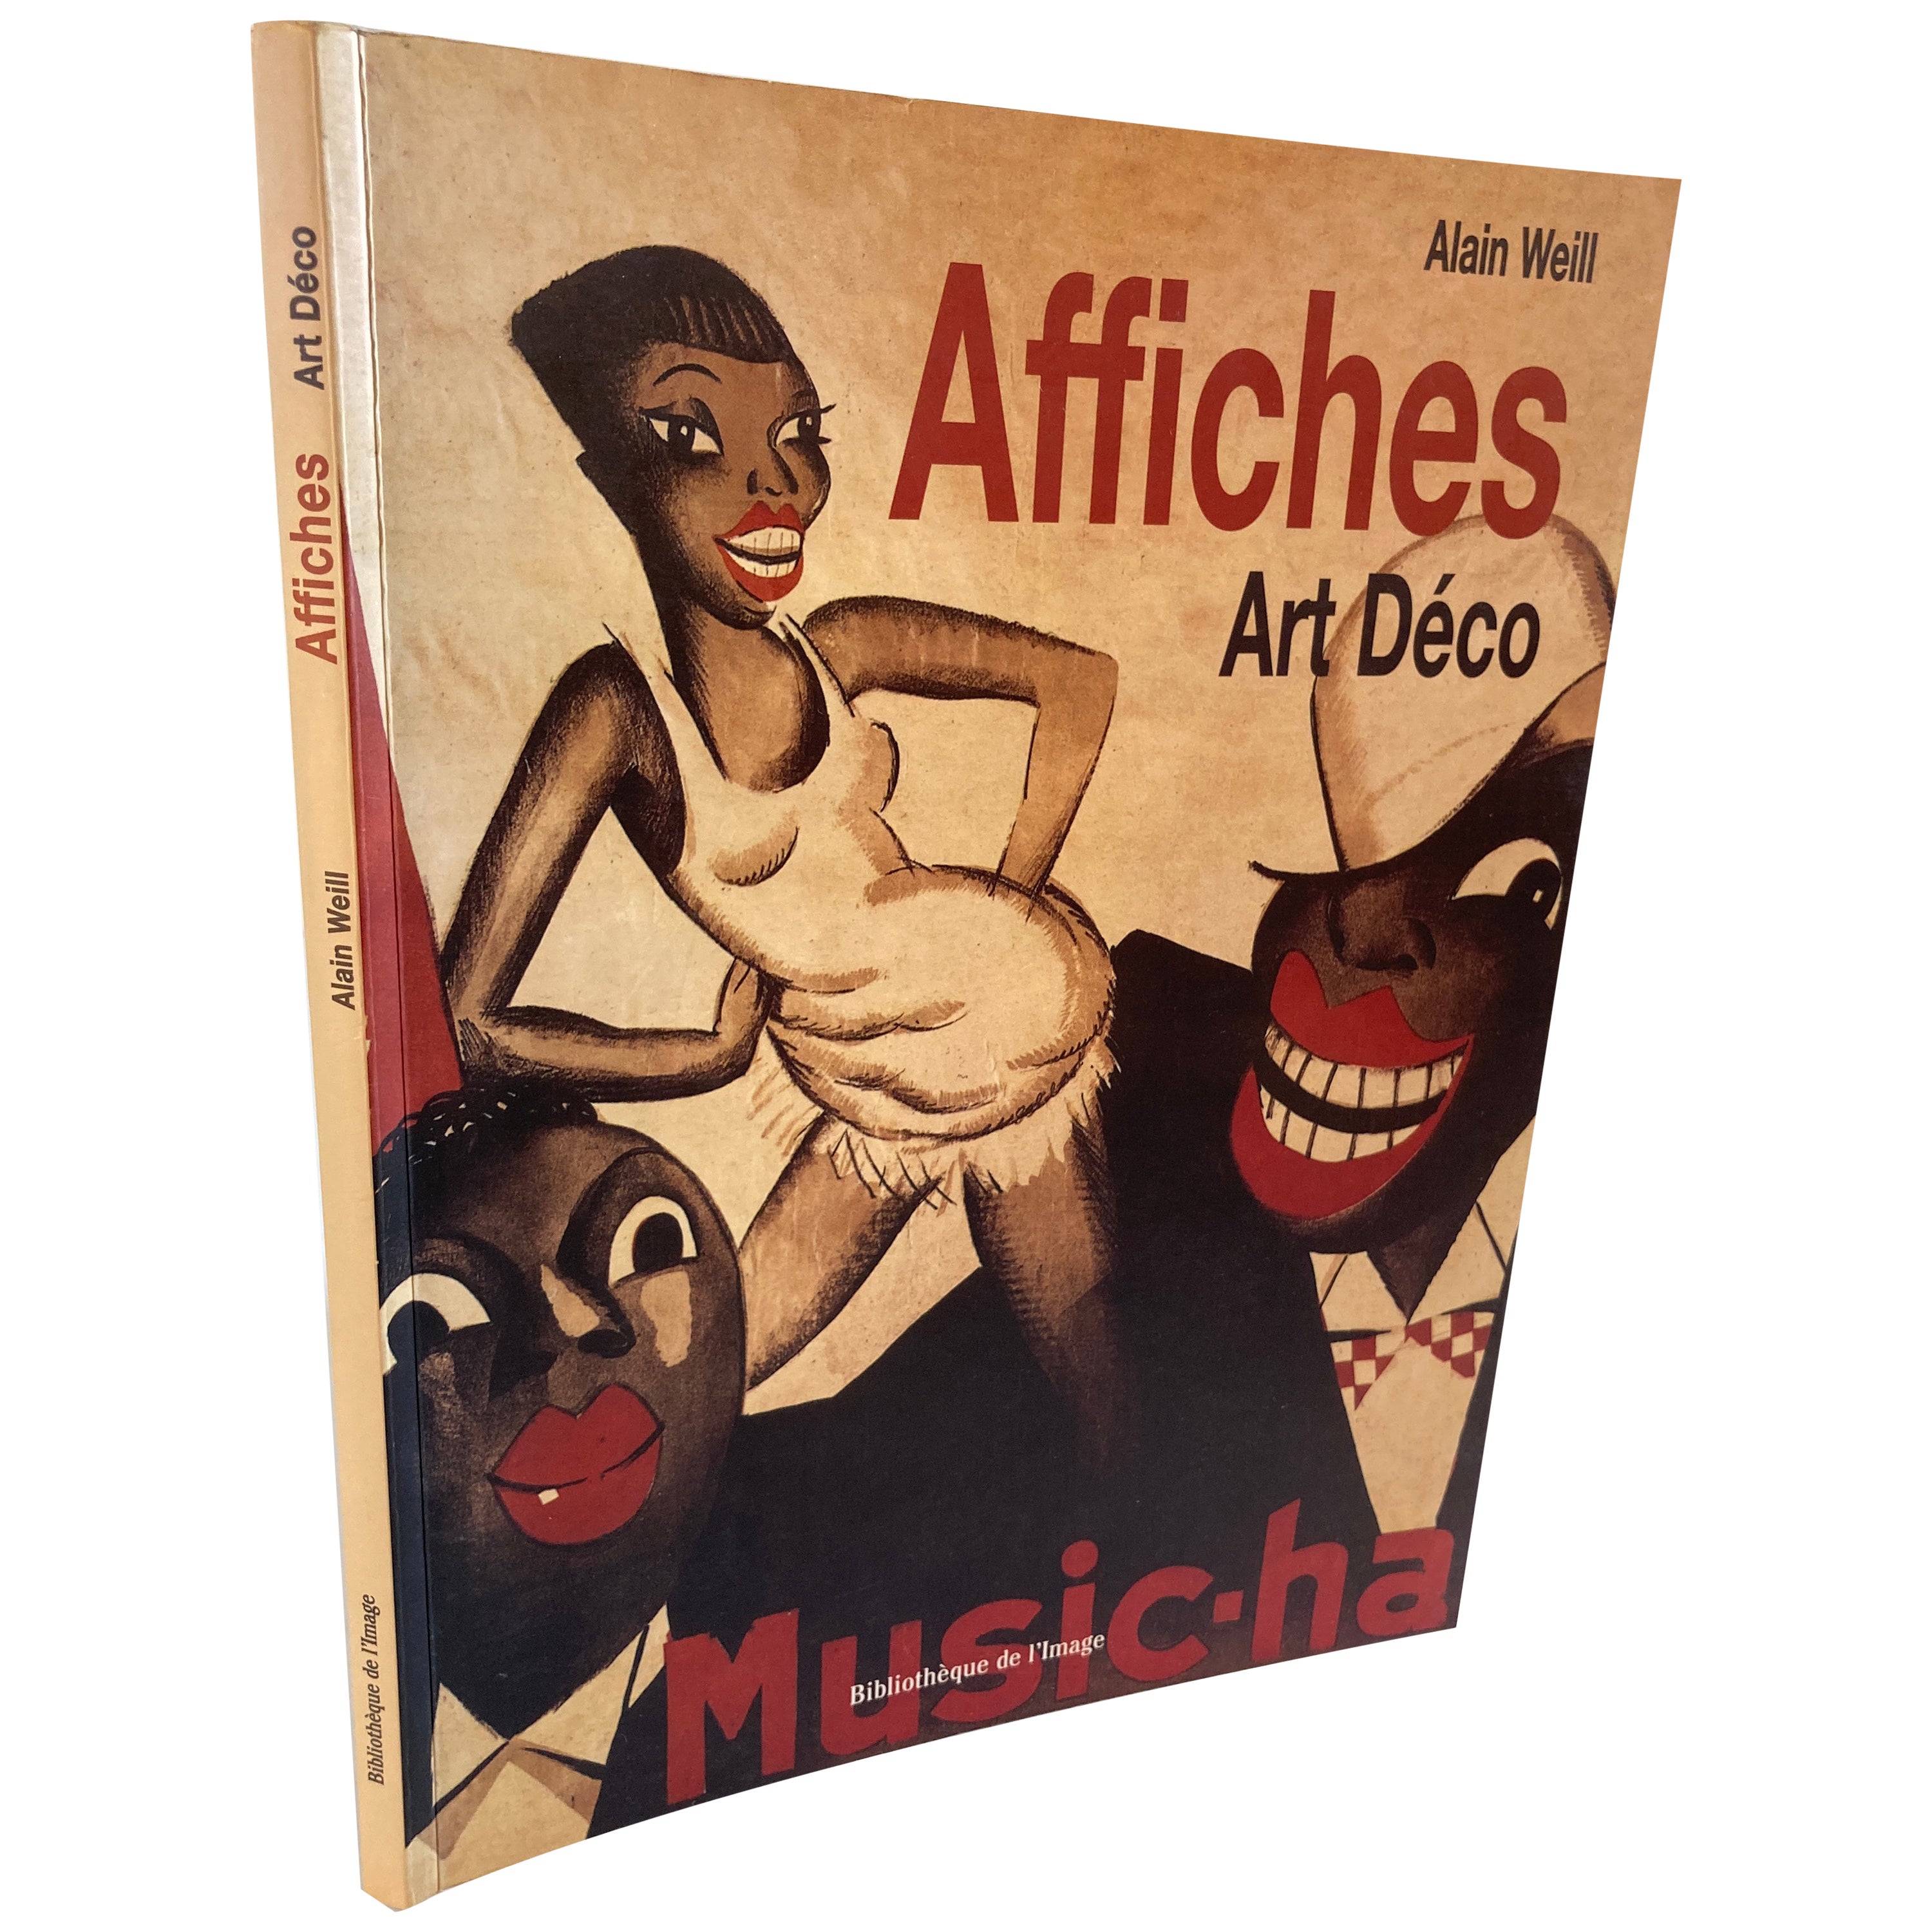 Affiches Art Deco by Alain Weill Art Book